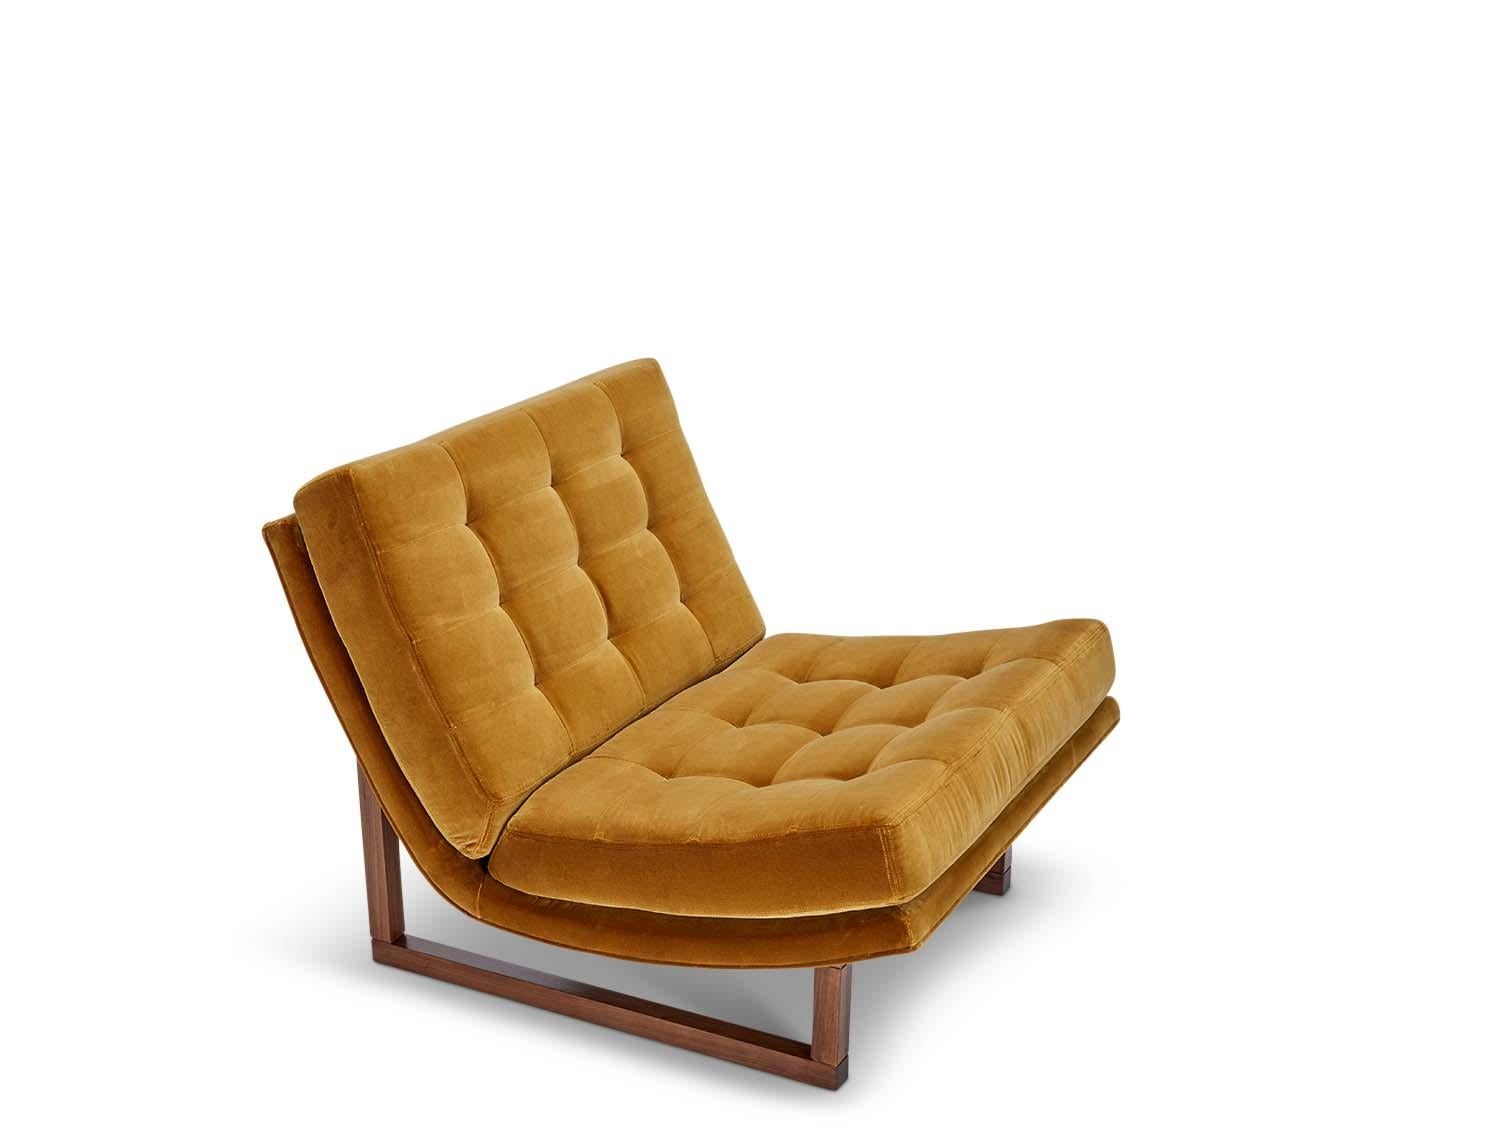 Der Griffin Chair ist ein breiter, armloser Loungesessel mit Biskuit-Tufting. Der Sockel besteht aus massivem amerikanischem Nussbaum oder weißer Eiche.

Die Lawson-Fenning Collection'S wird in Los Angeles, Kalifornien, entworfen und handgefertigt.